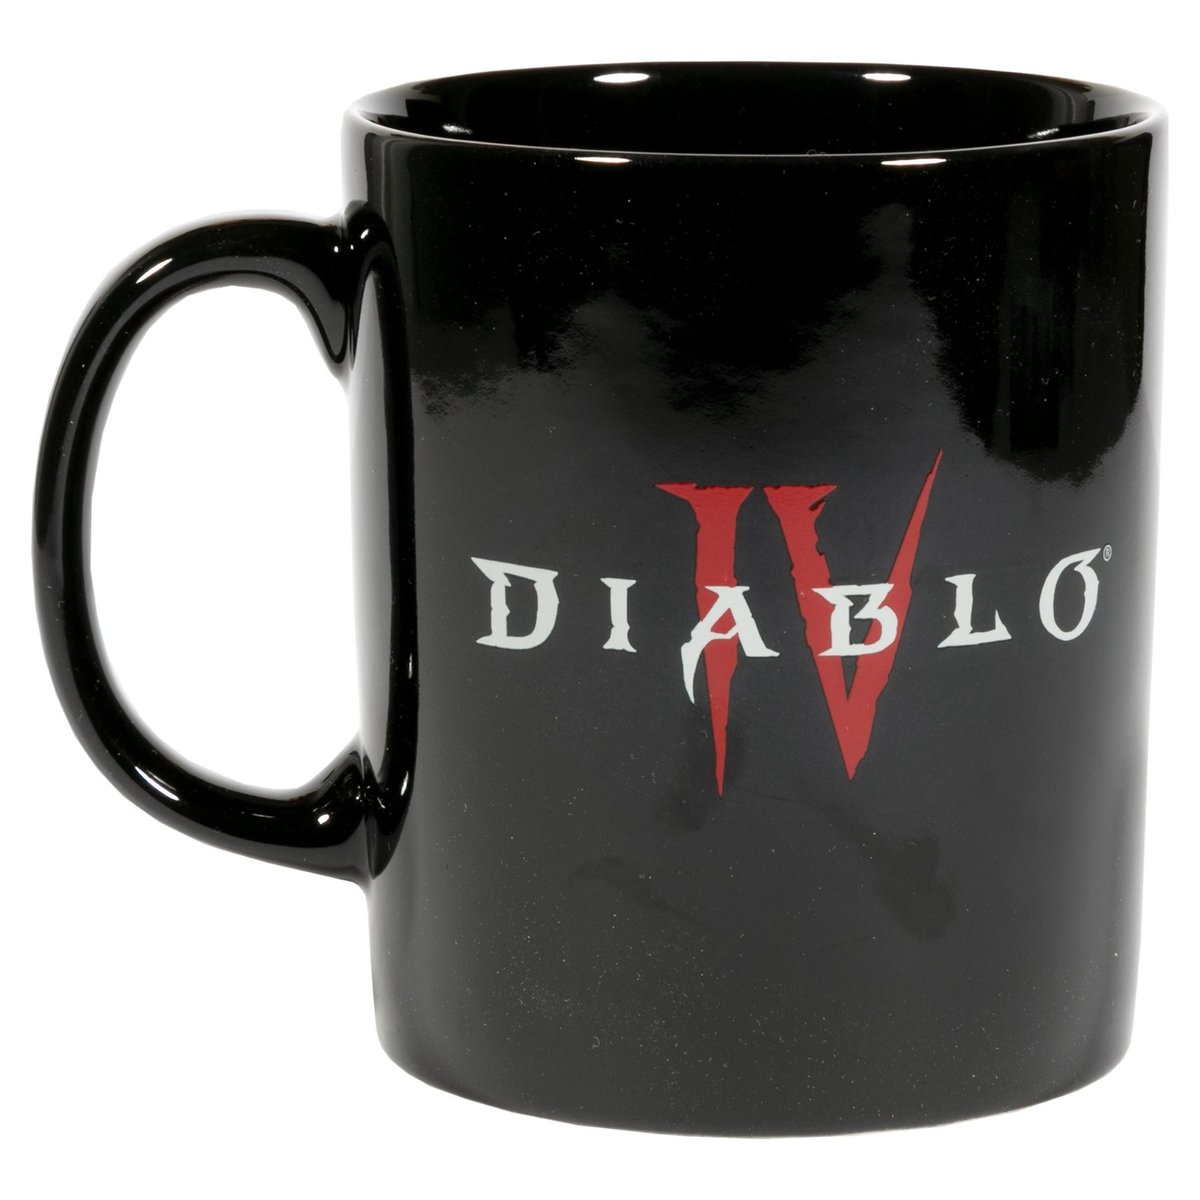 Kubek - Diablo IV Hotter Than